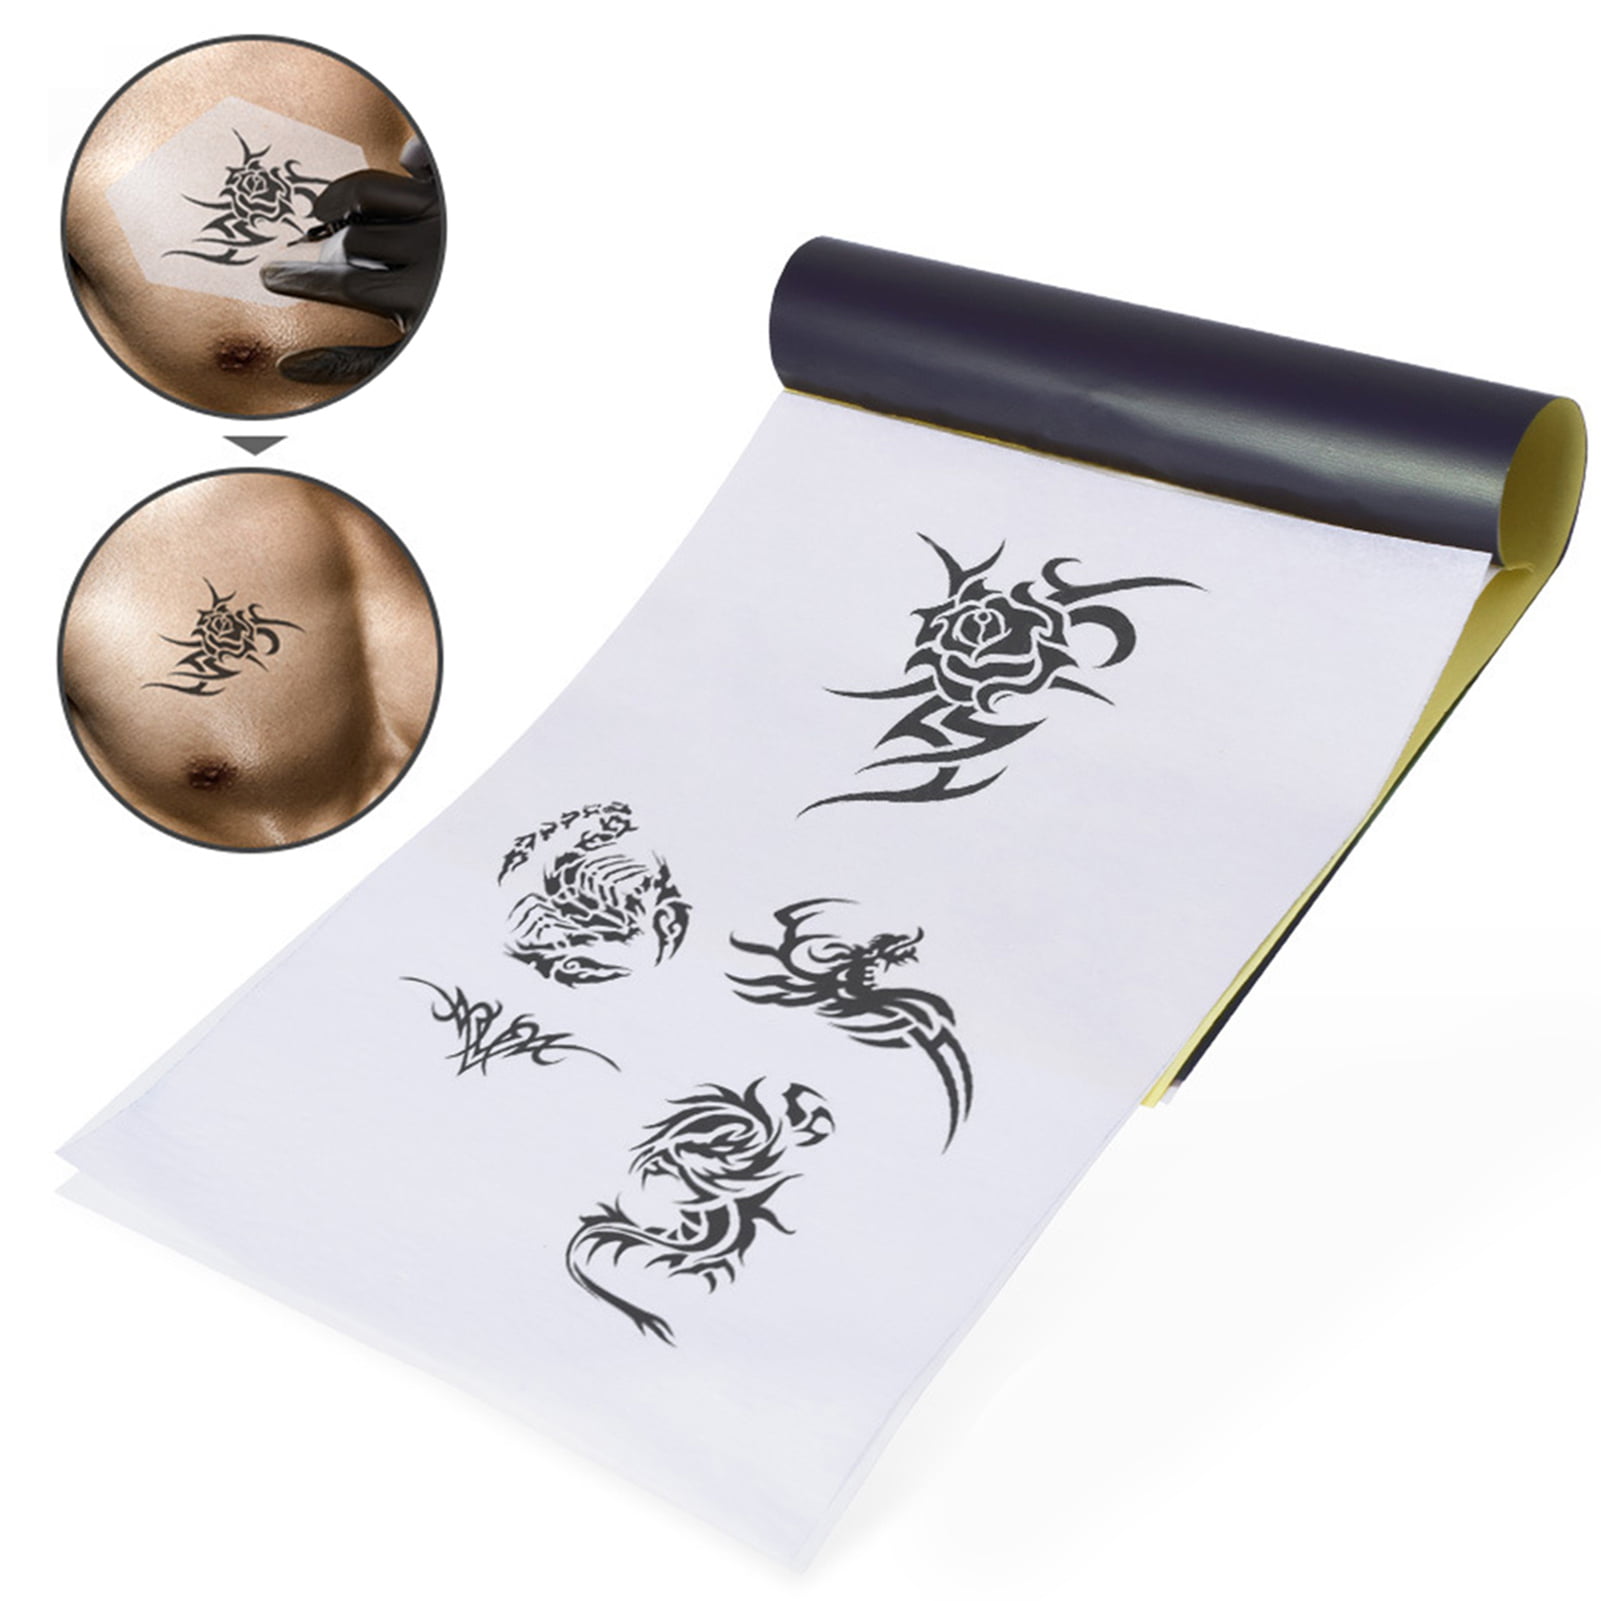 LIUMATE Tattoo Transfer Paper, 100 Sheets Tattoo Stencil Transfer Paper for  Tattooing, 4 Layers Tattoo Thermal Stencil Paper A4 Size DIY Tattοο